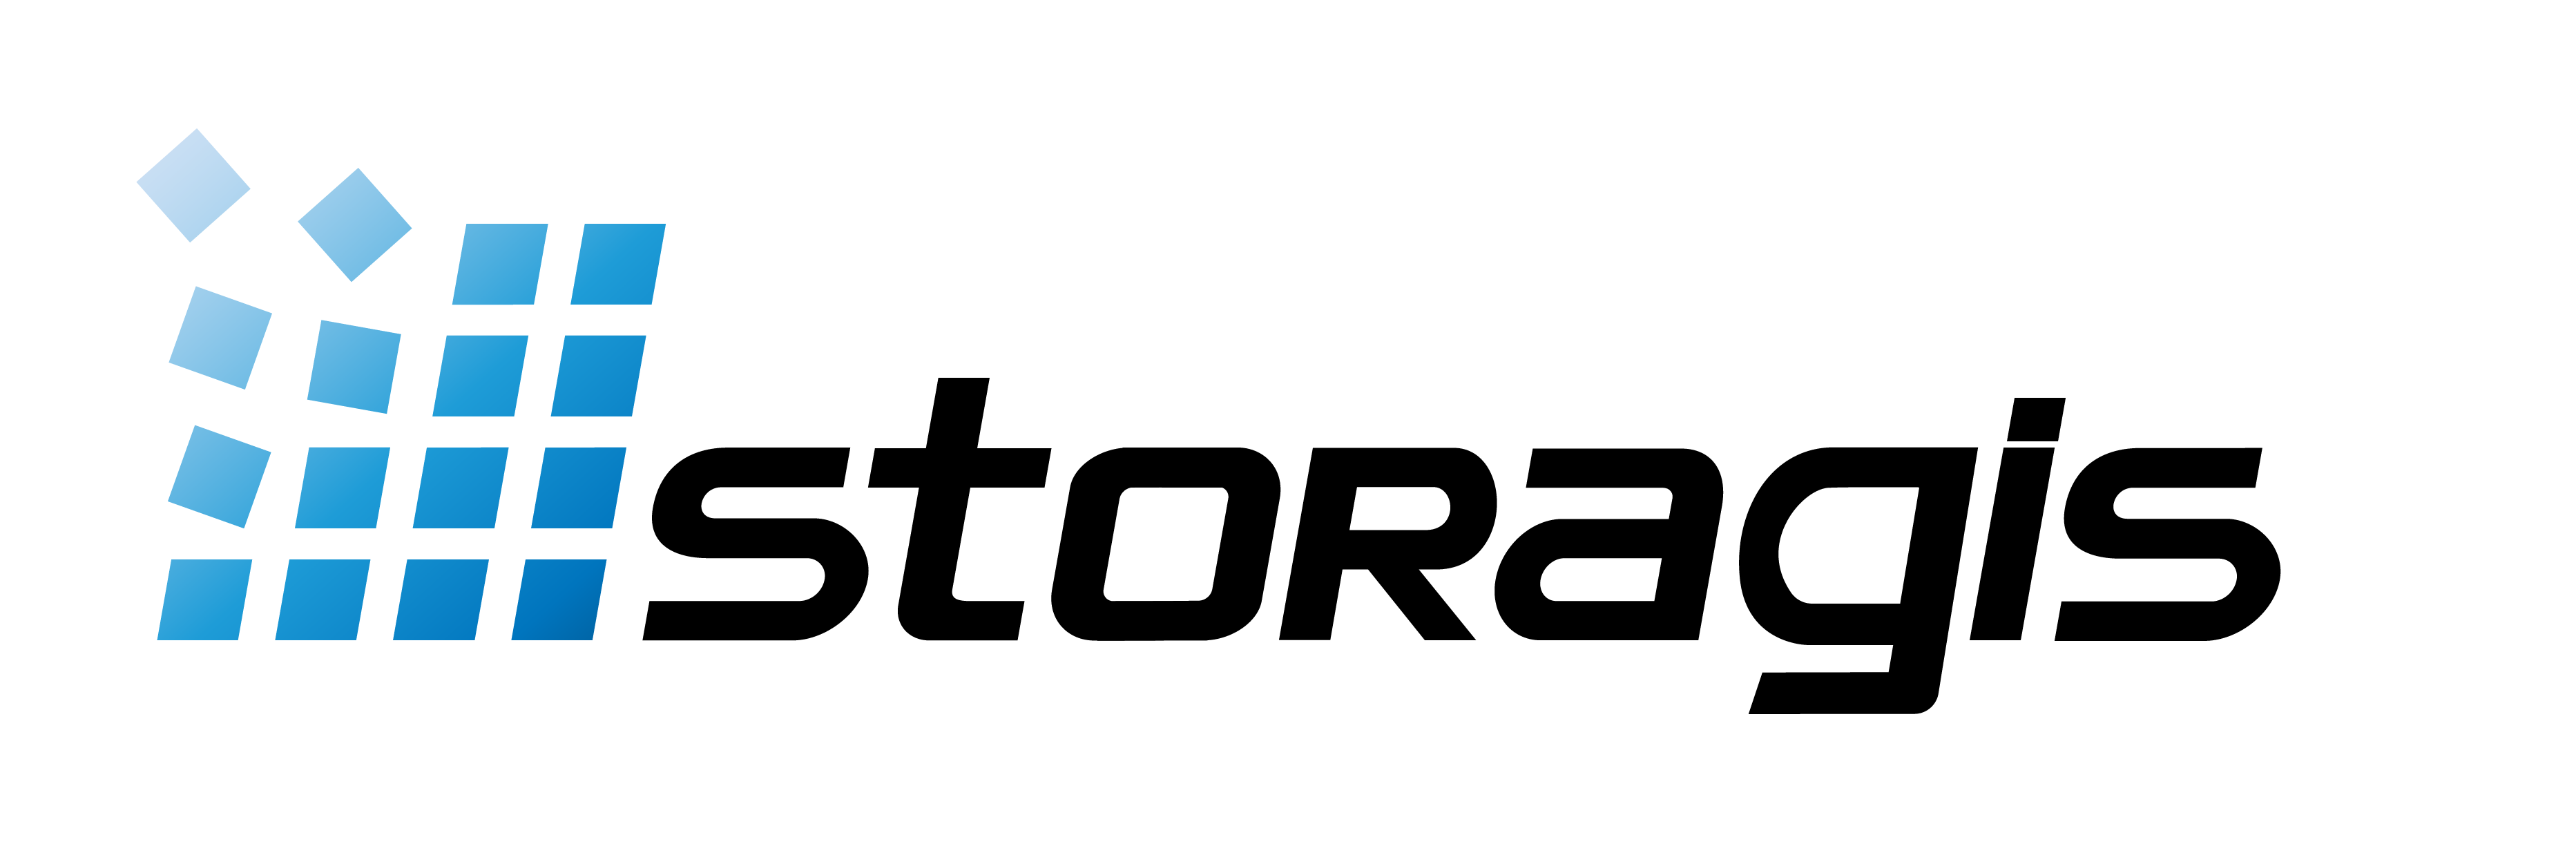 logo de la société storagis, il est constitué d'un damier en couleur bleu dégradé et du mot storagis ecrit en lettres noires majuscules.